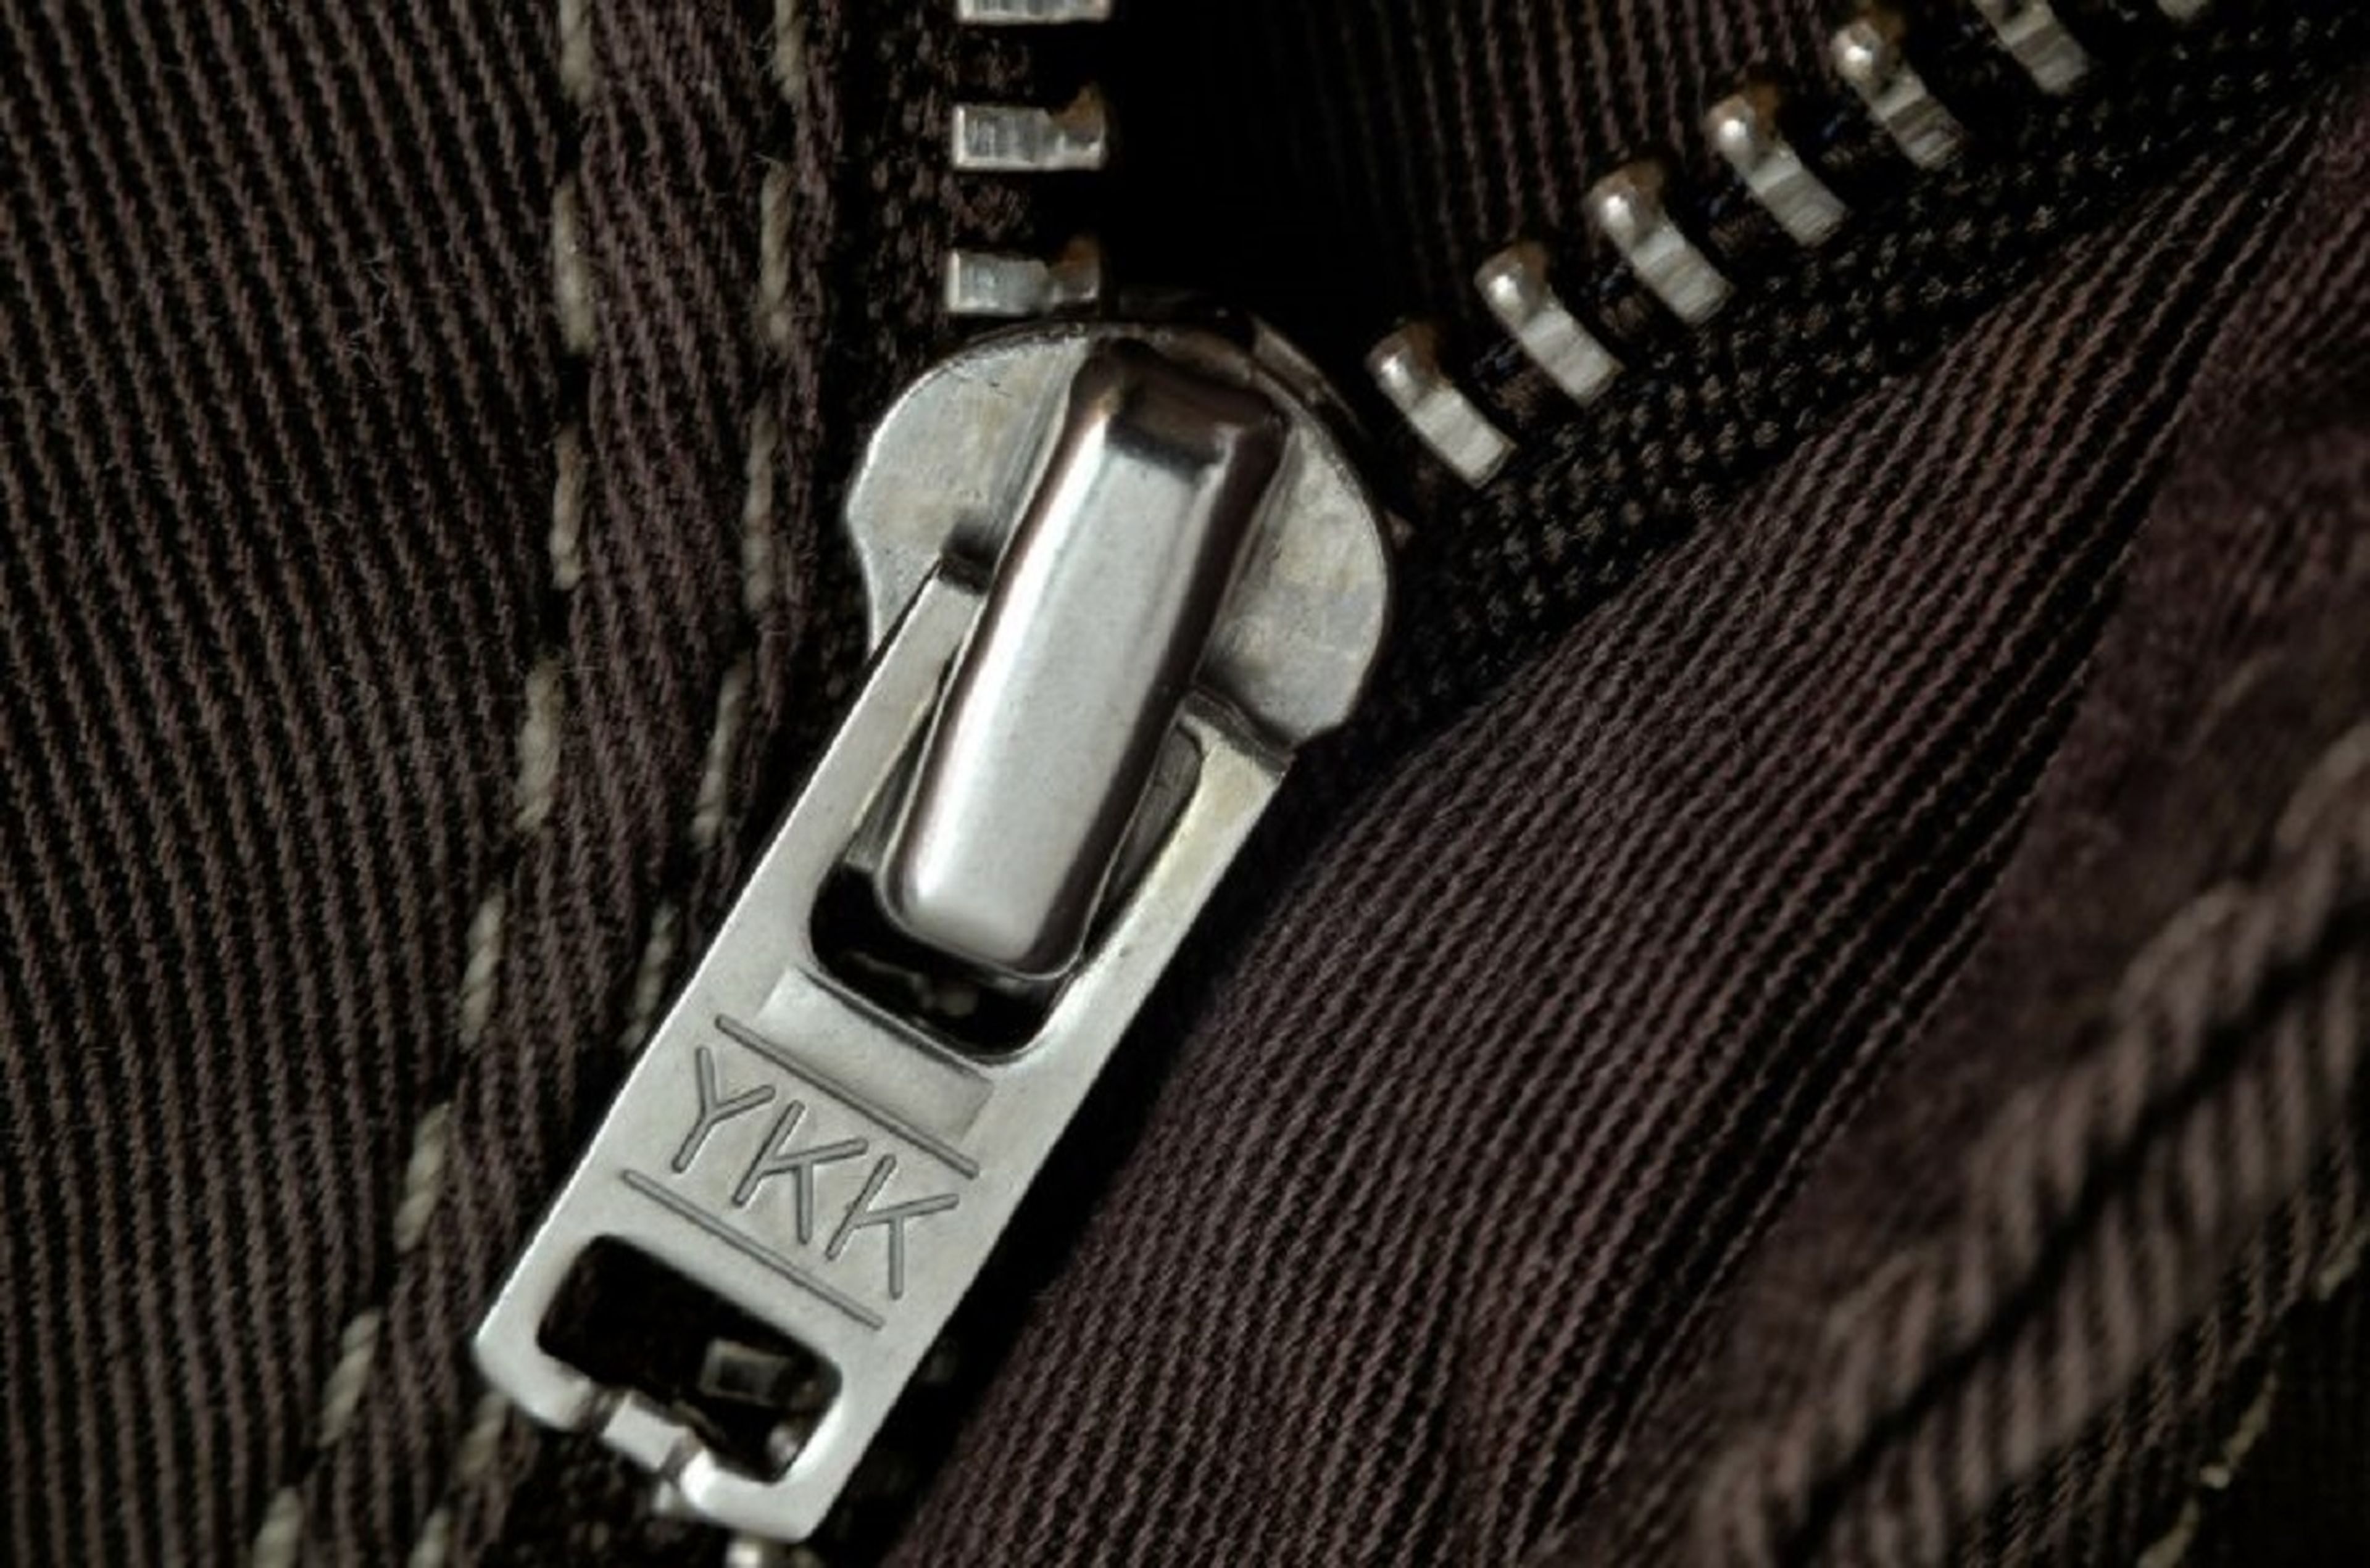 Muchos de los pantalones llevan inscritos en sus cremalleras las siglas YKK